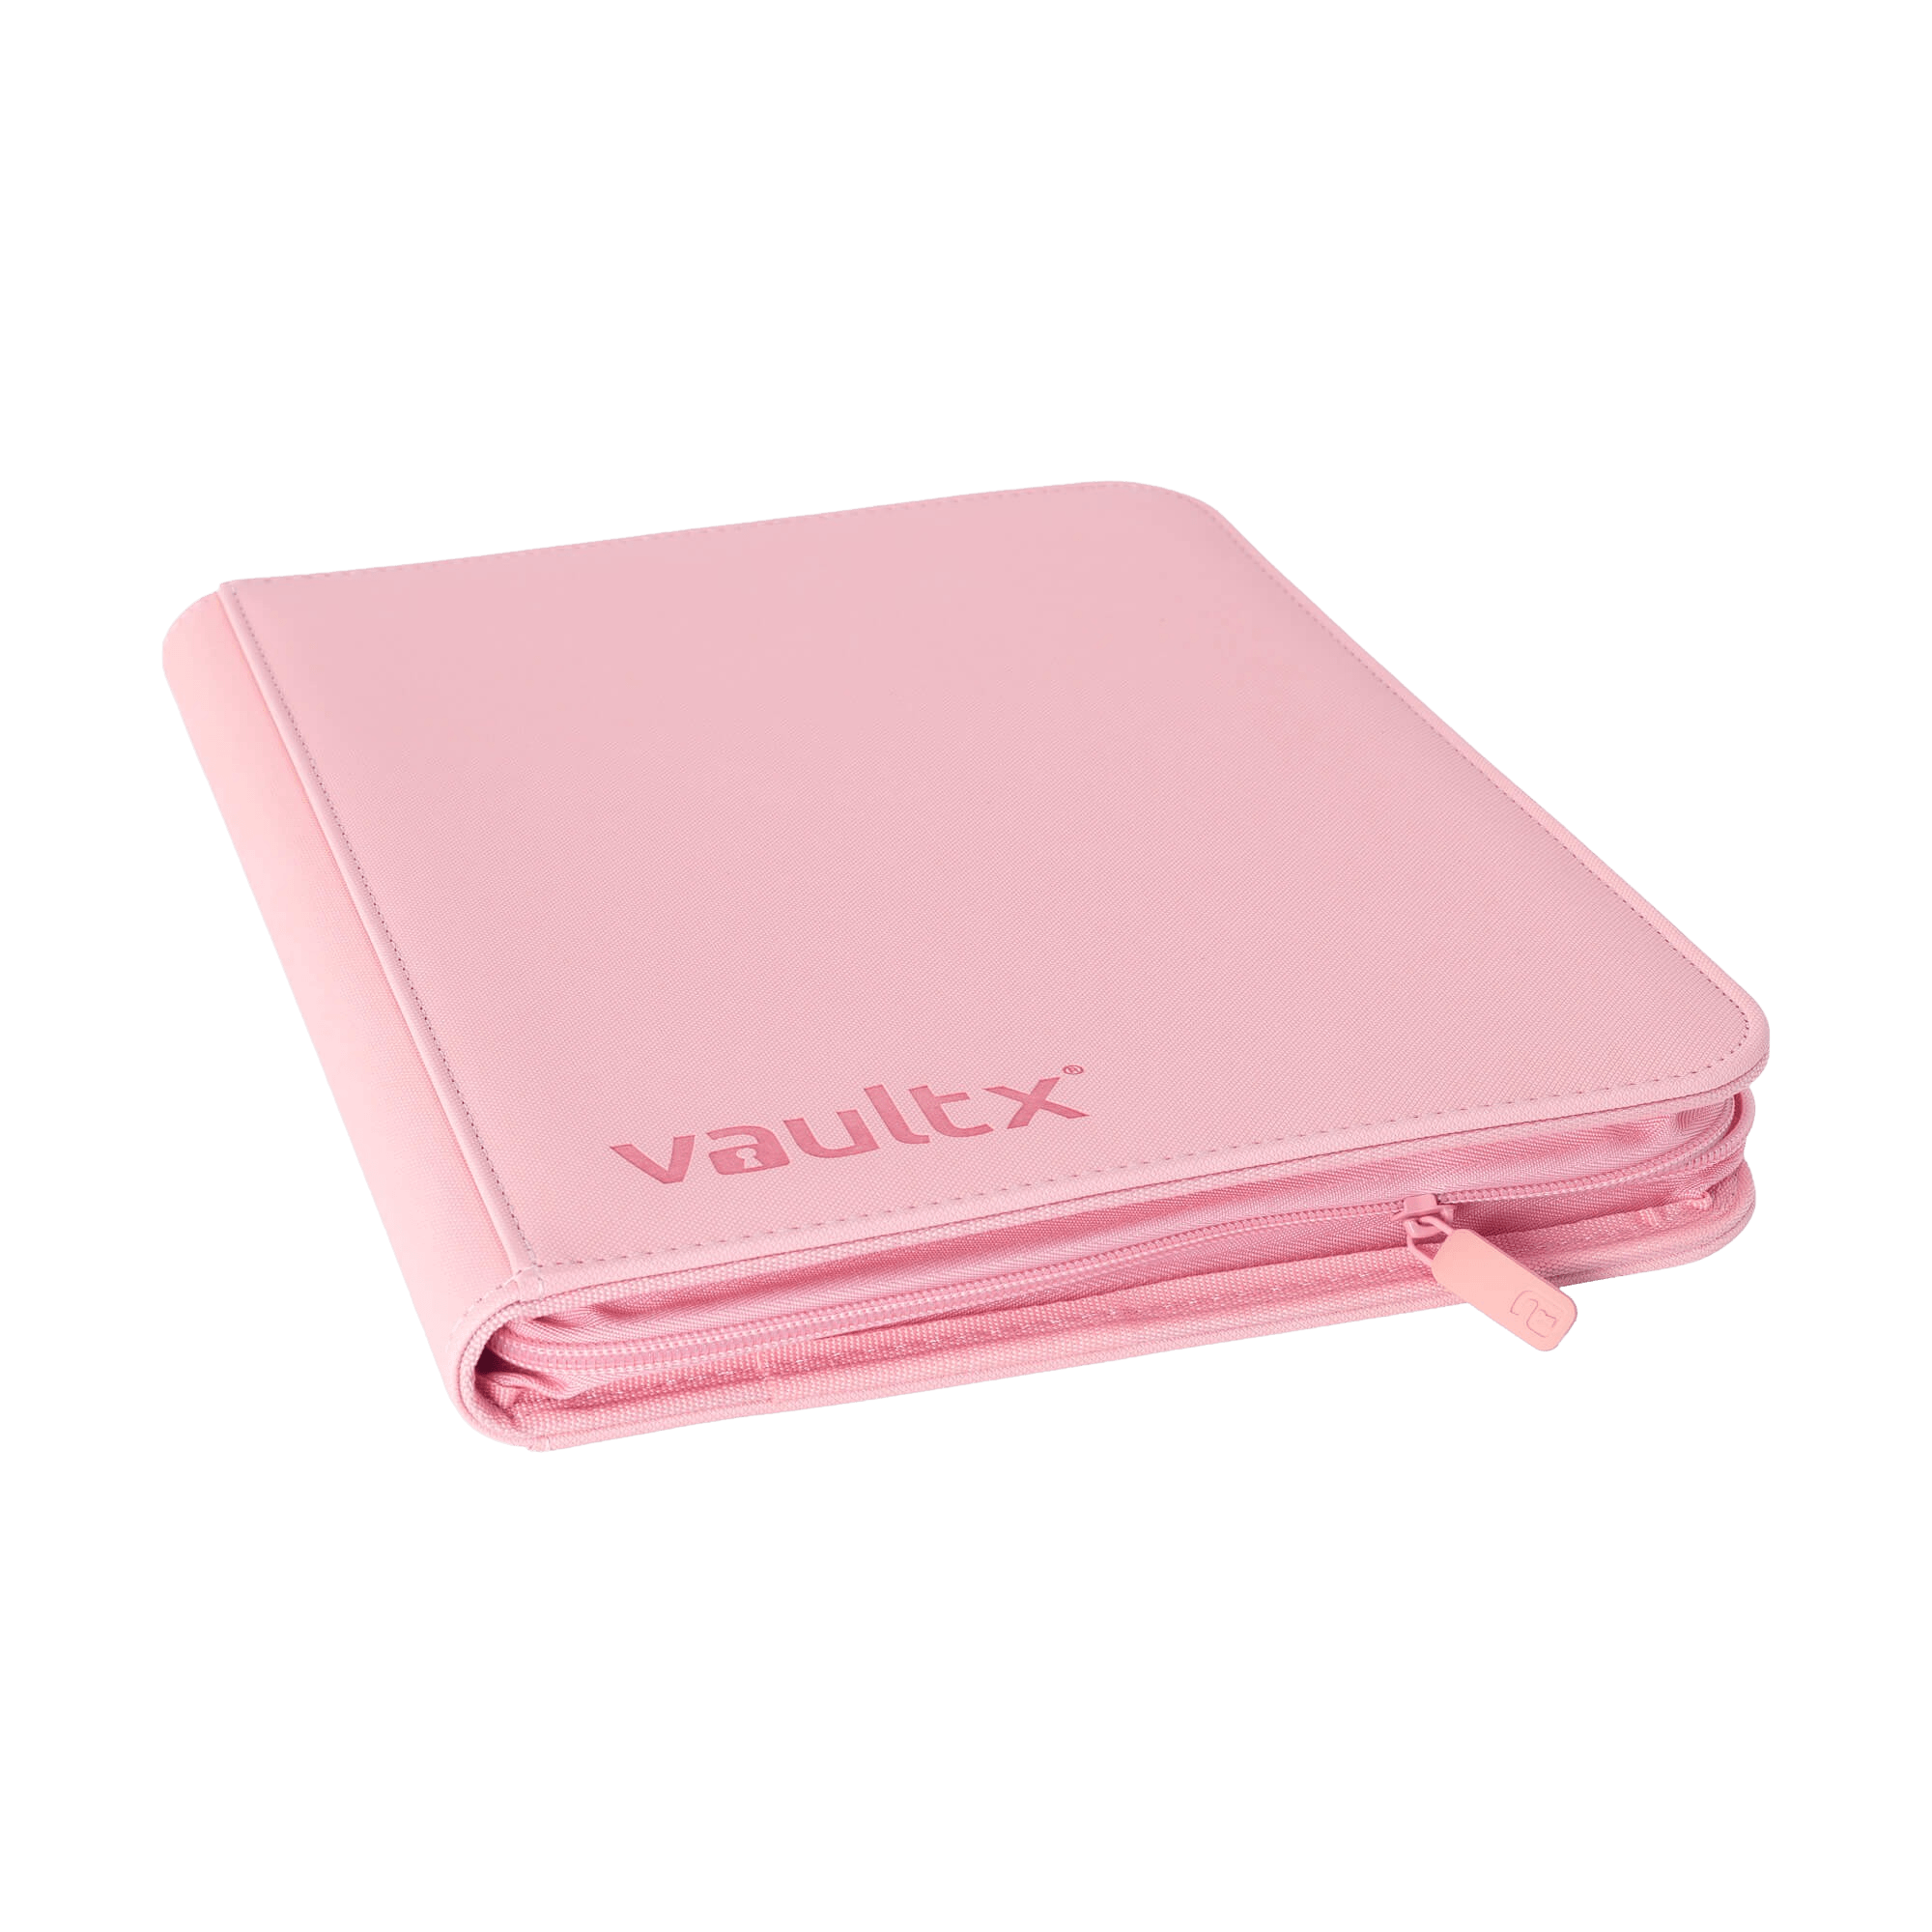 Vault X 9-Pocket Exo-Tec® Zip Binder - Just Pink - The Card Vault